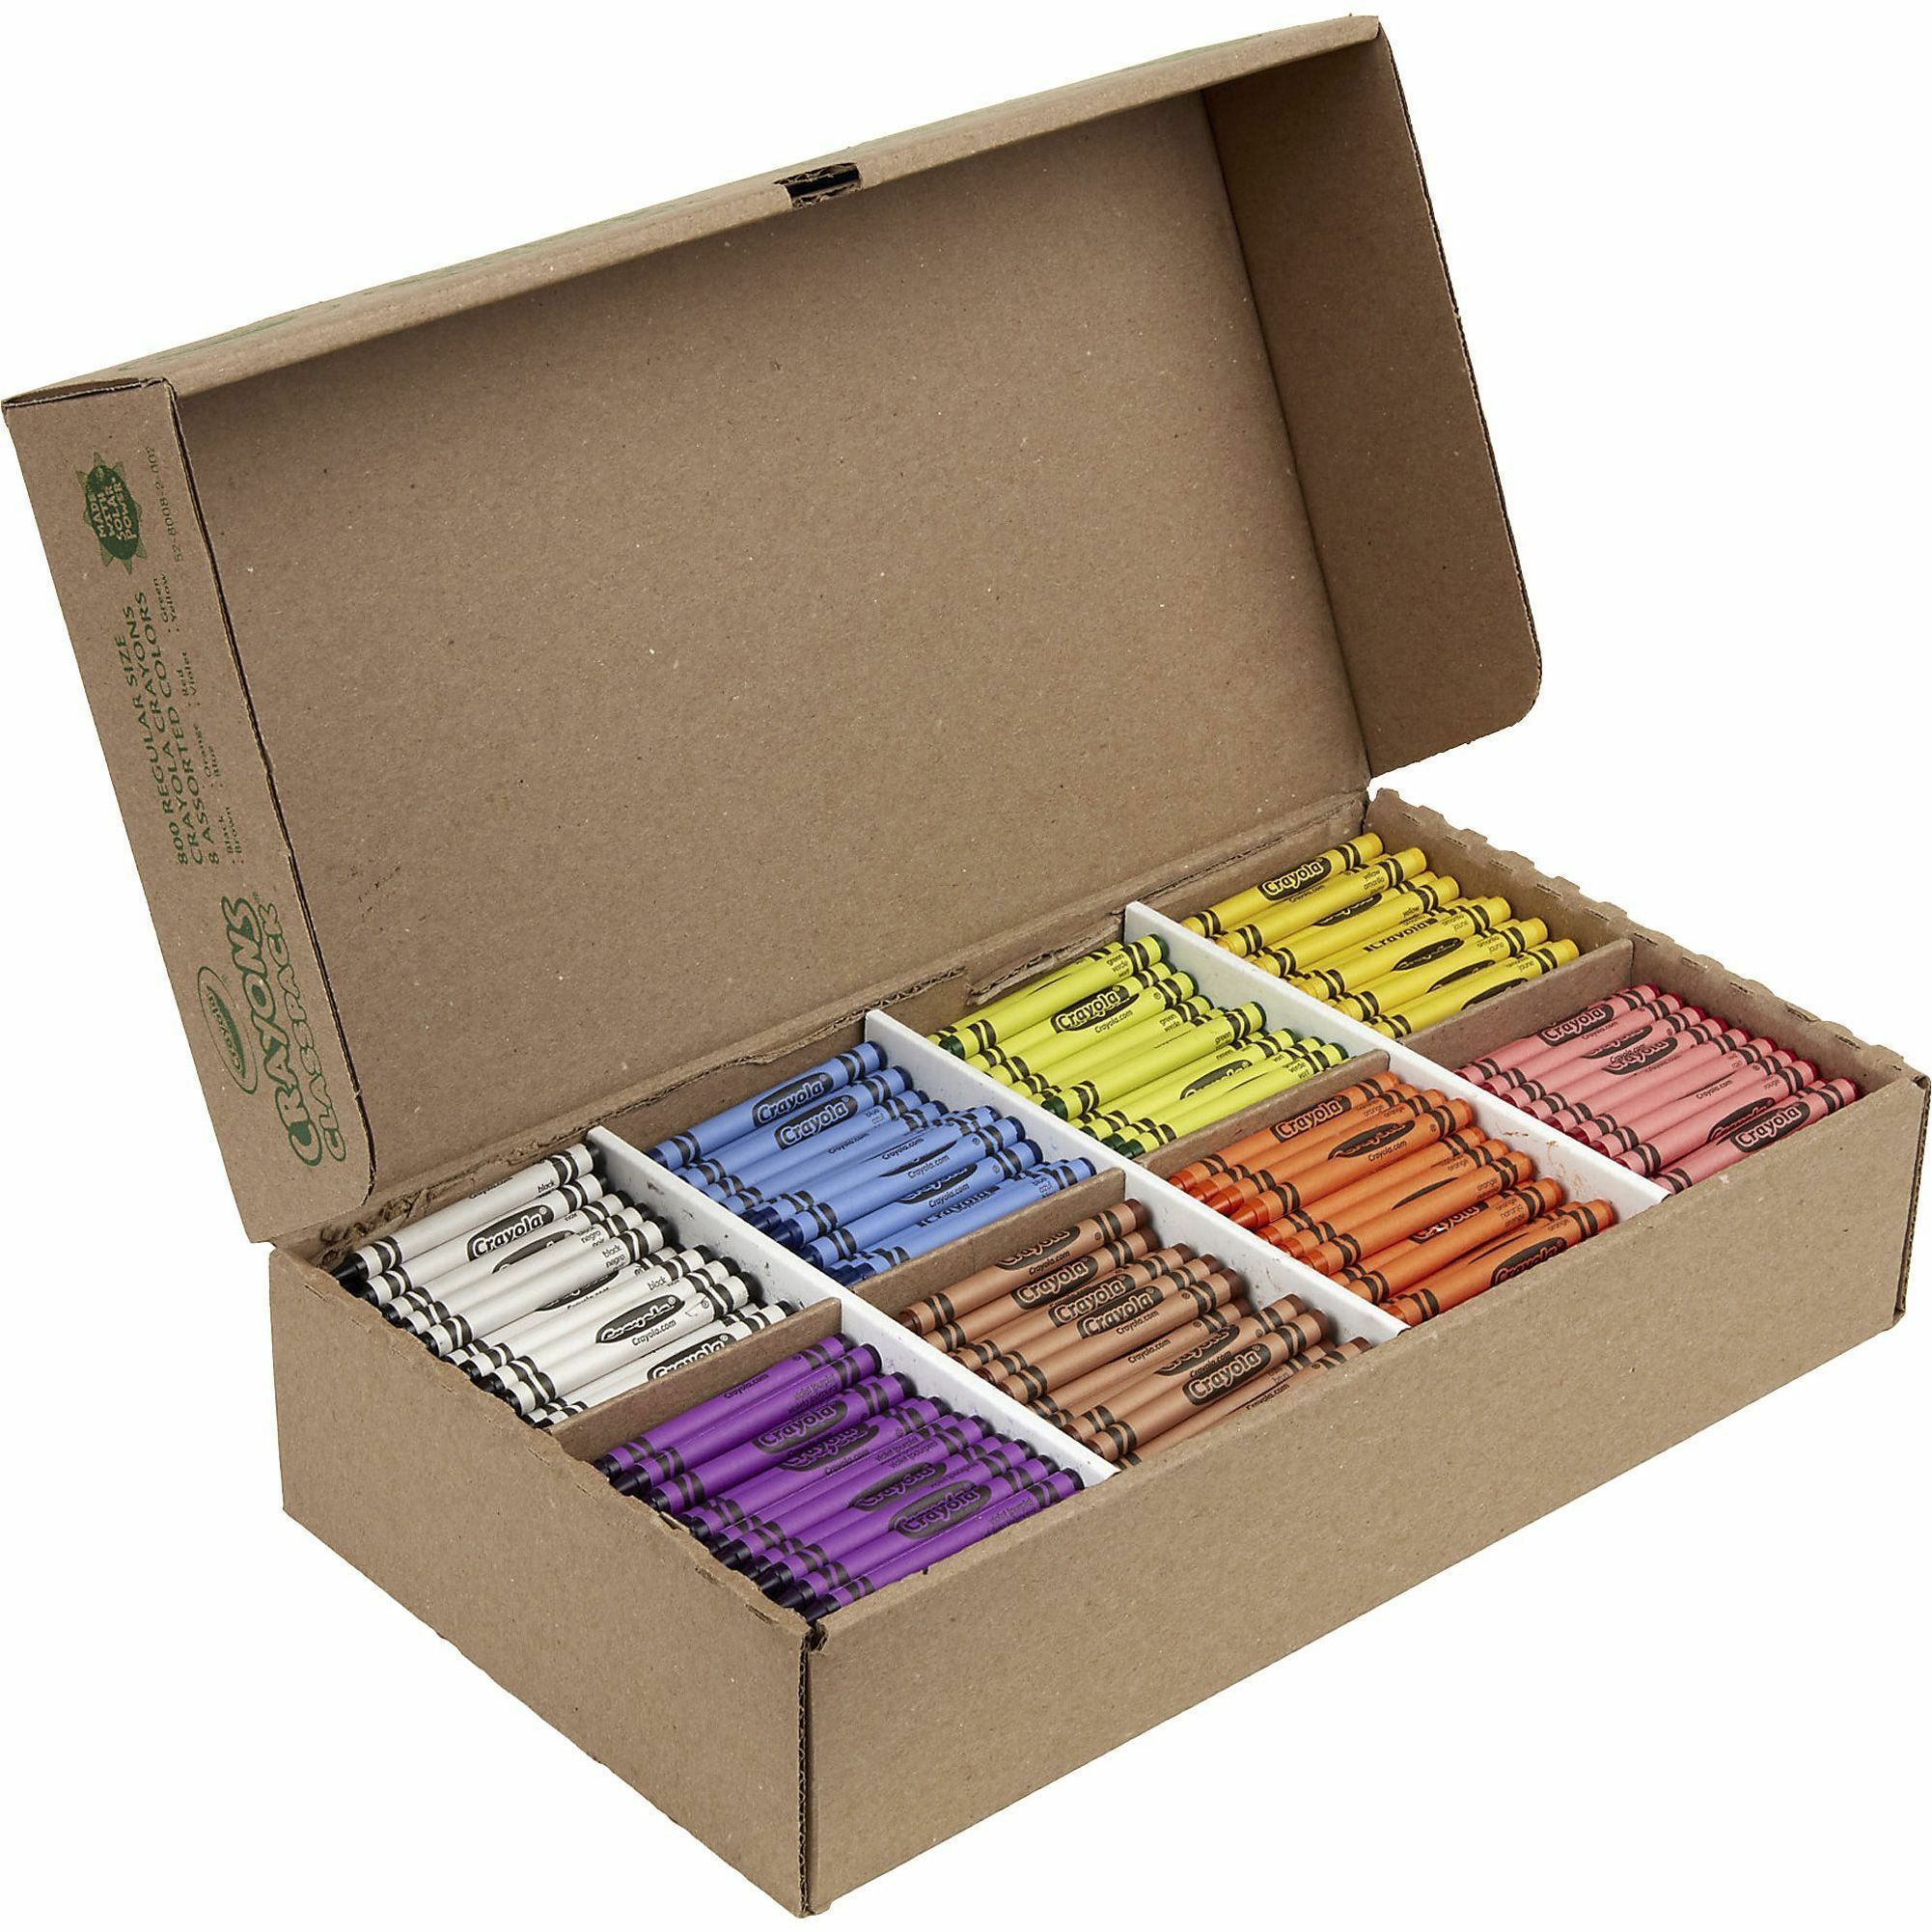 Crayola 16 Regular Size Crayon Set, Classic Colors